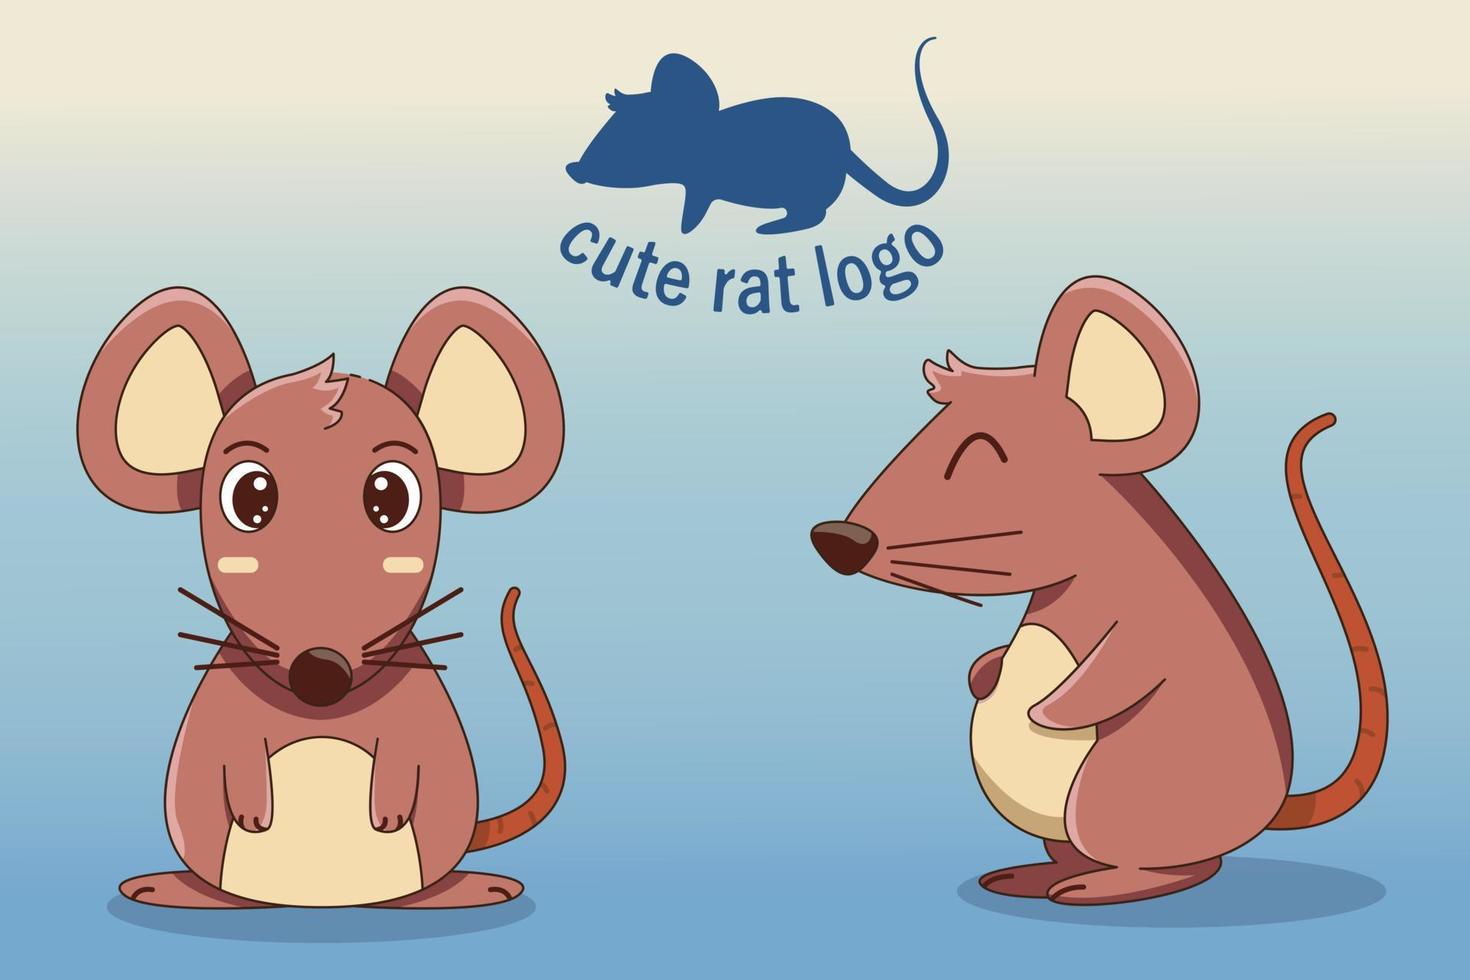 estilo simples de desenho animado de personagem de rato bebê fofo, floresta, design de impressão, ilustrações vetoriais vetor